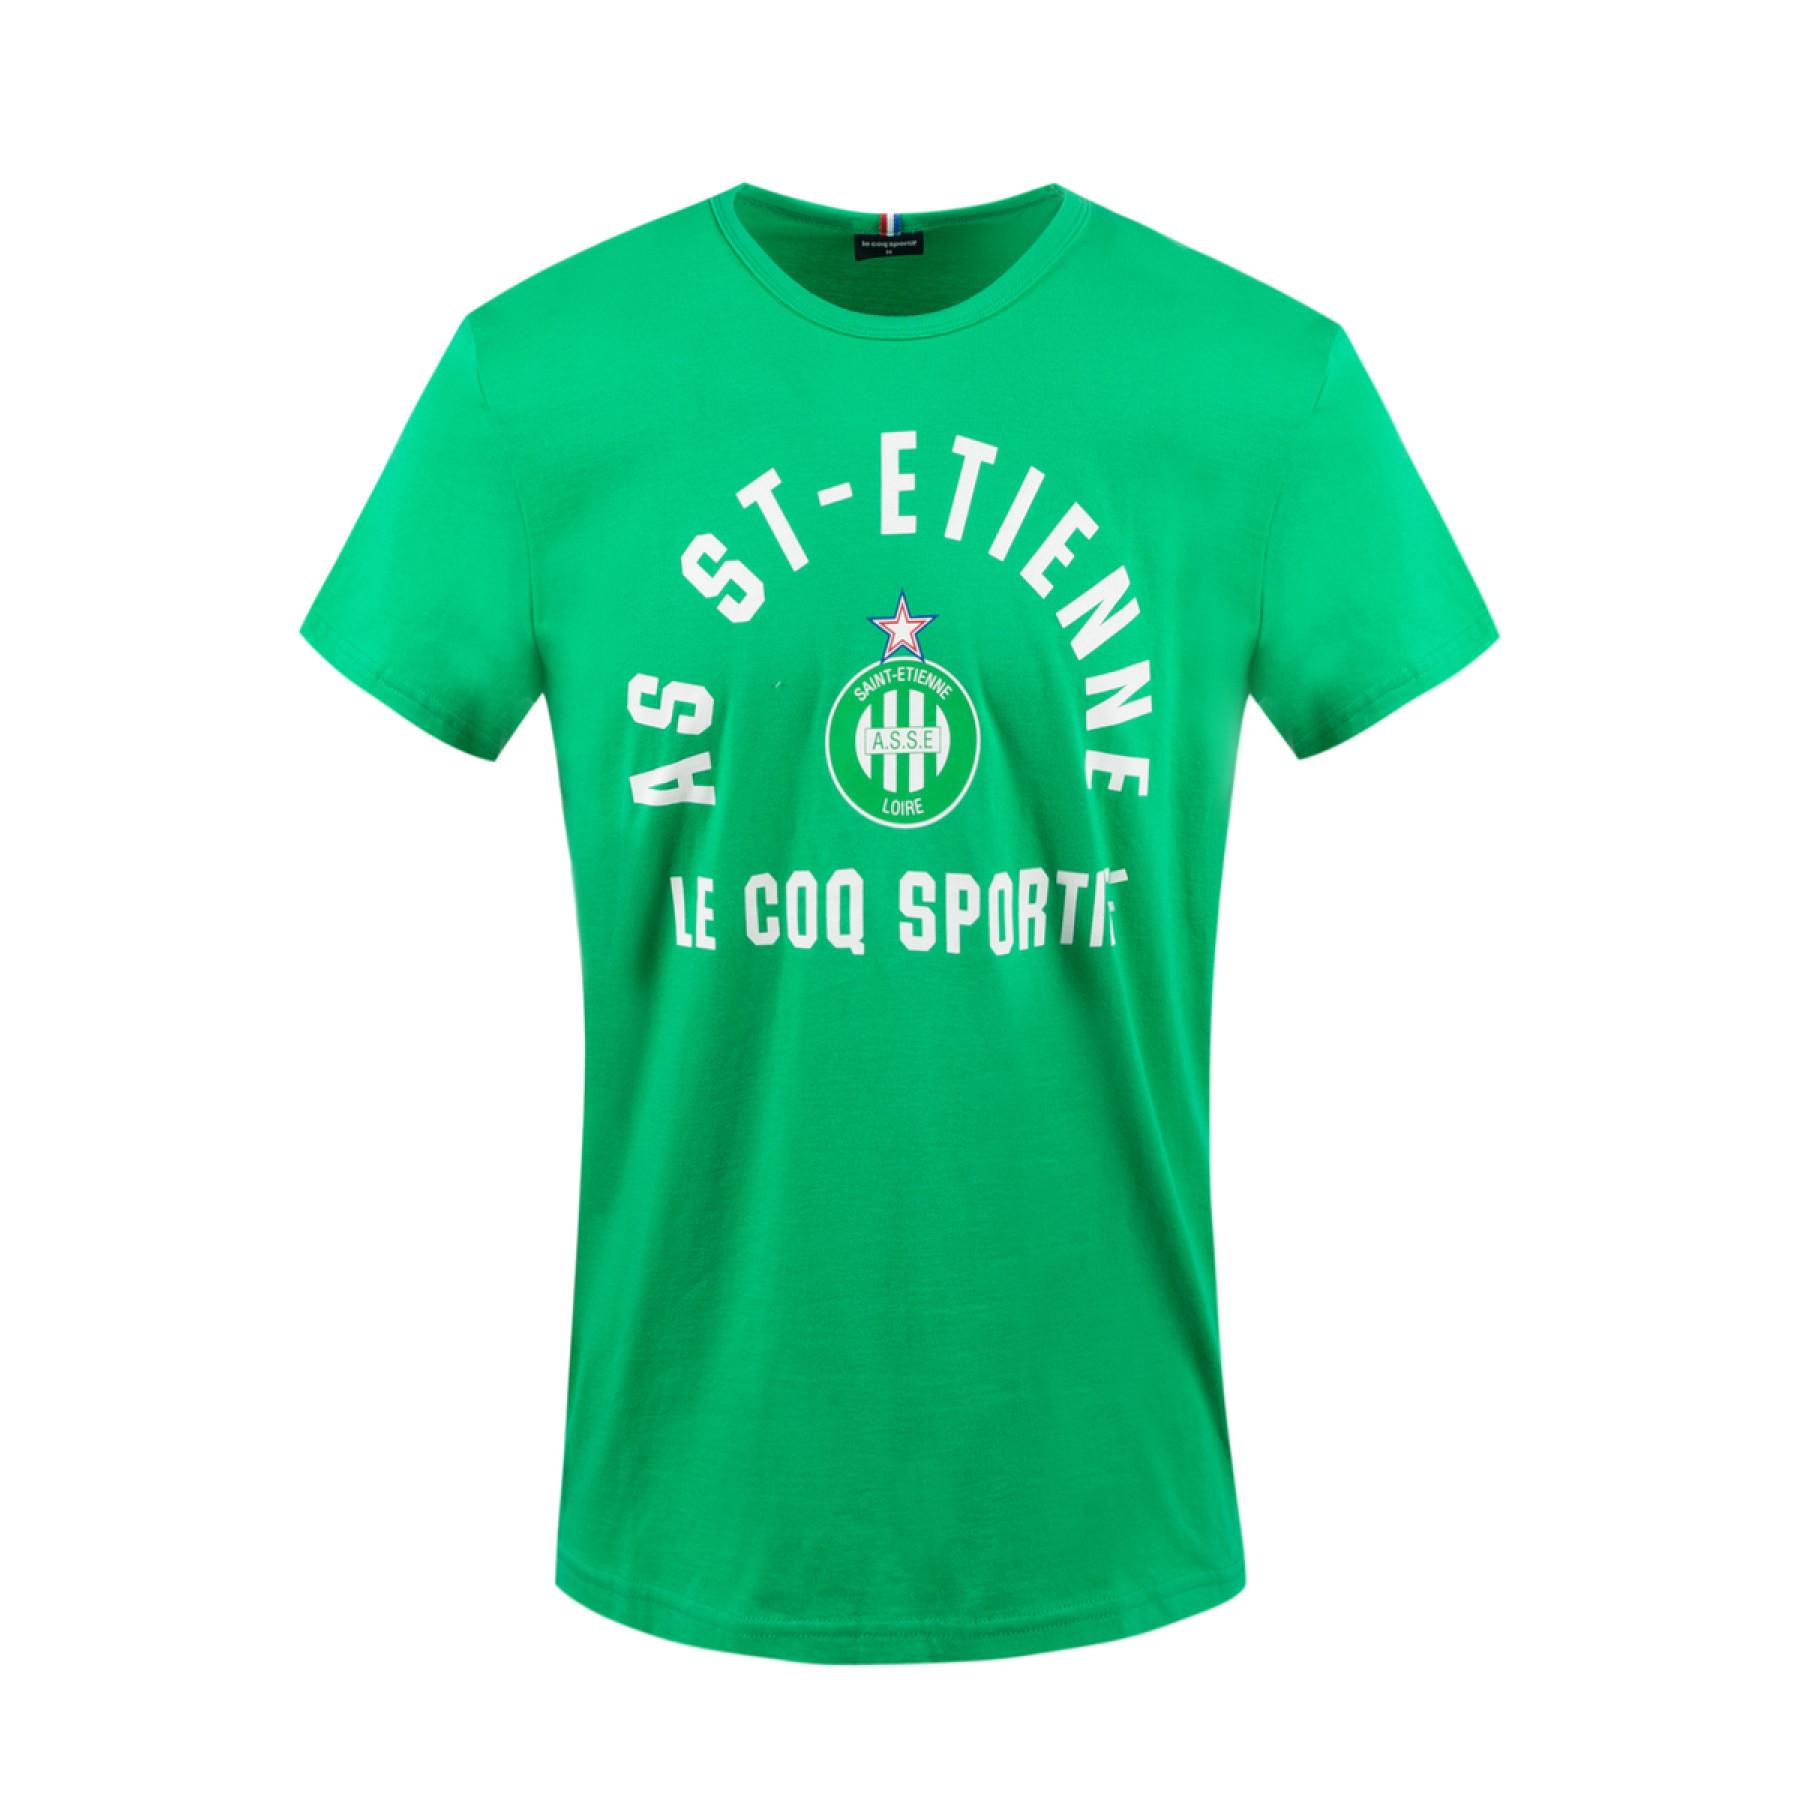 T-shirt als saint-etienne fan n°1